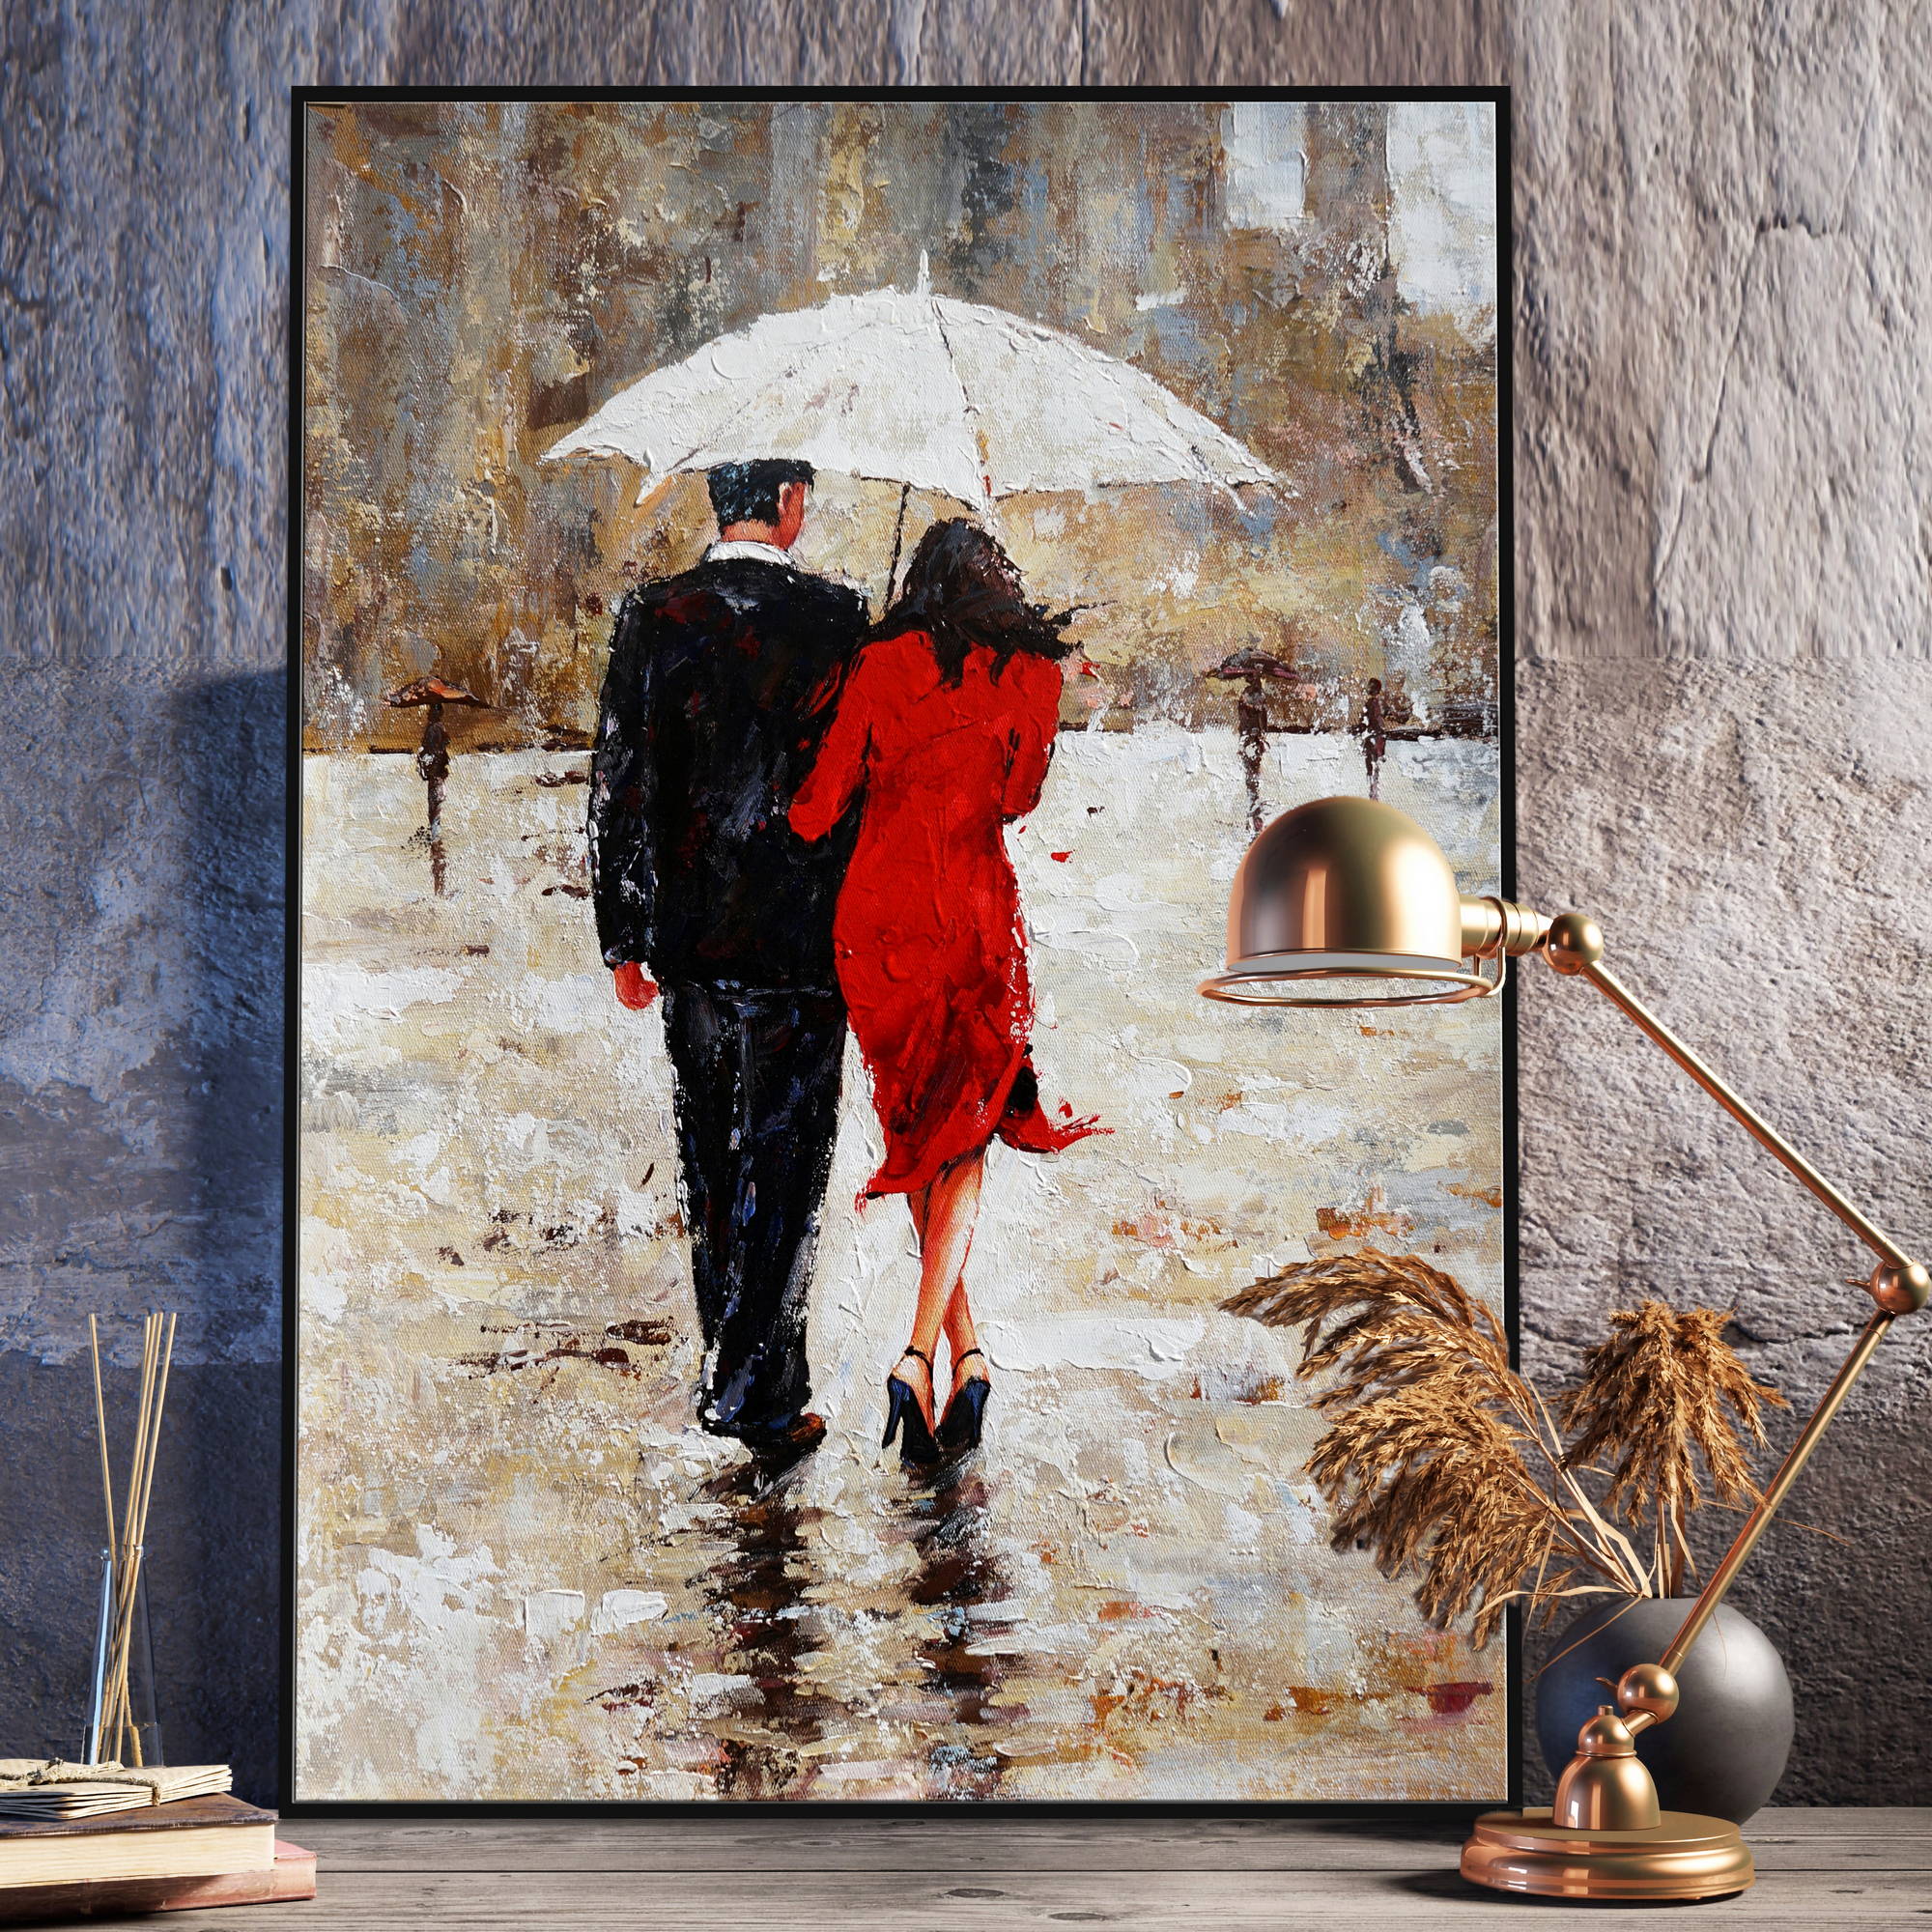 Dipinto di una coppia che si ripara dalla pioggia con un ombrello bianco, con la donna che indossa un abito rosso.